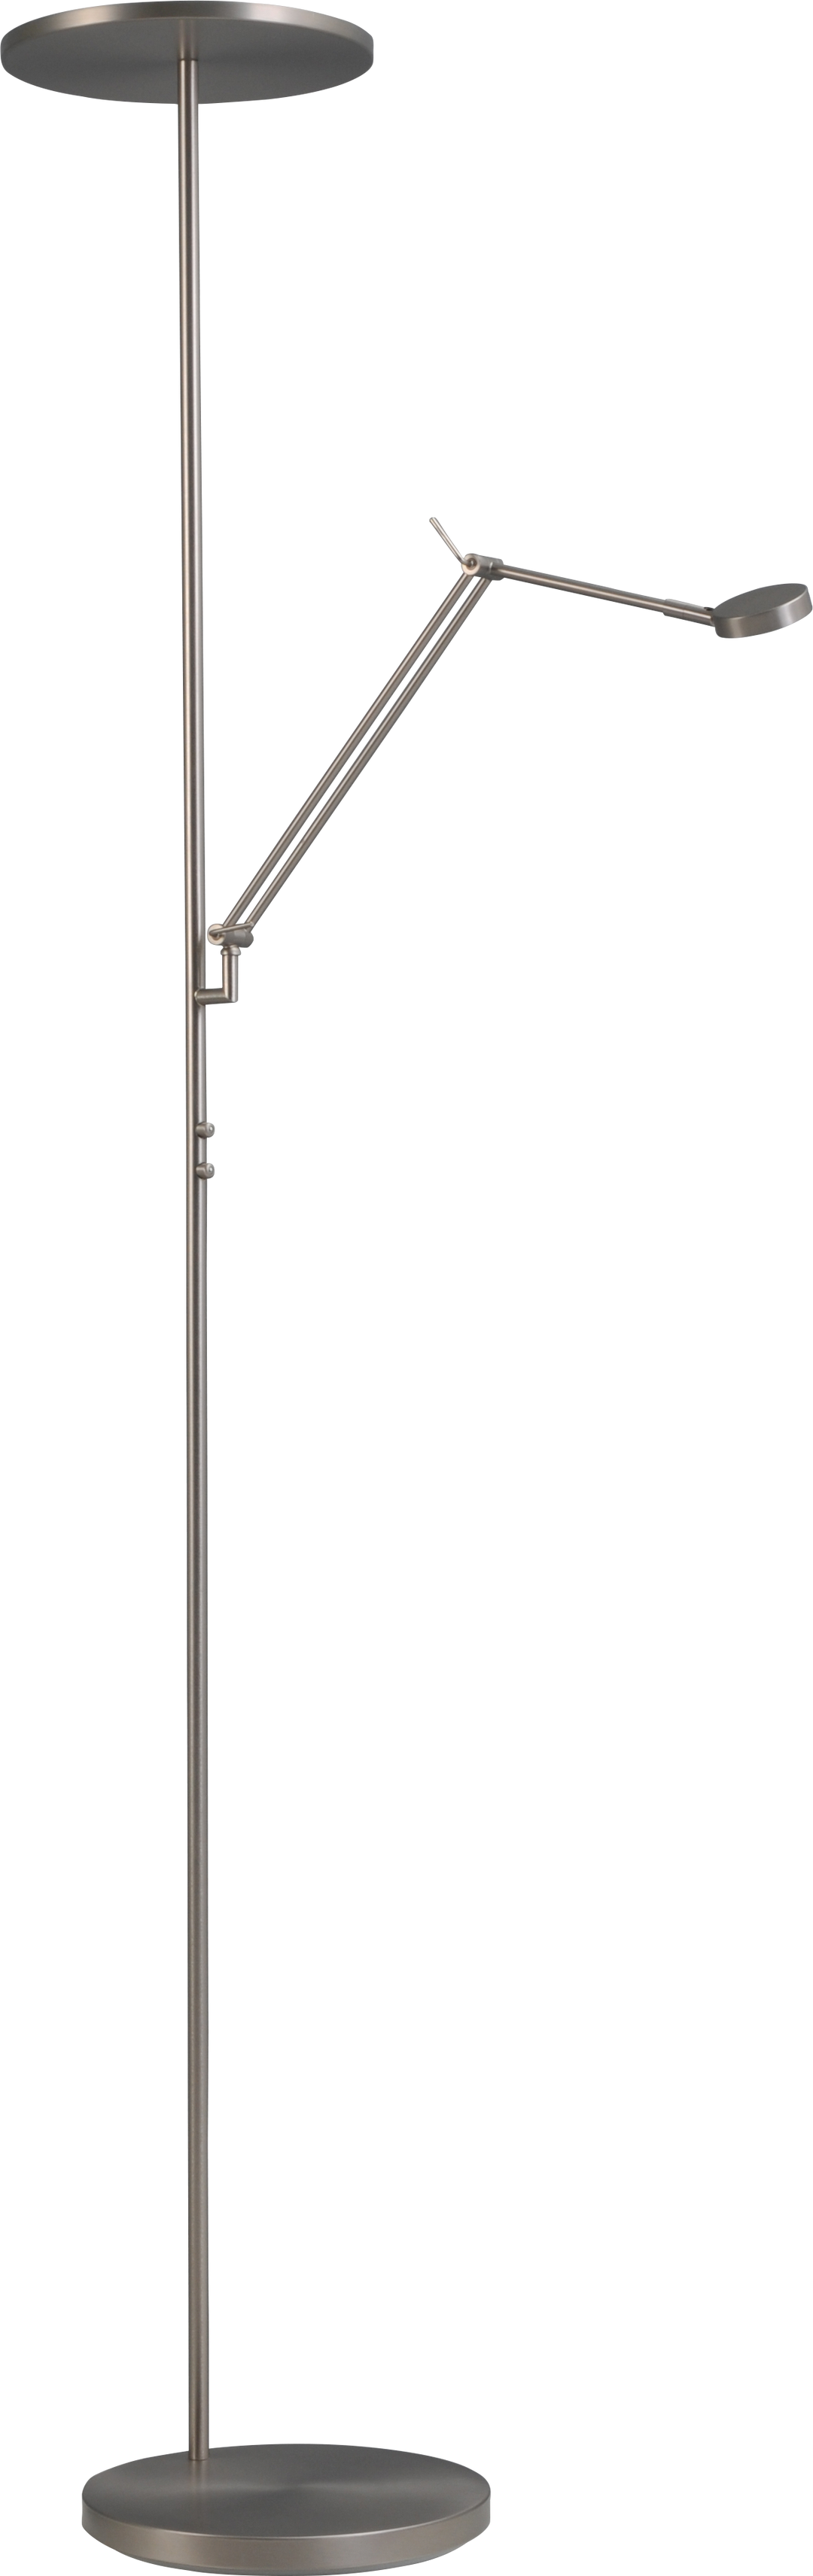 Vloerlamp Denia 2 LED Masterlight 1081-37